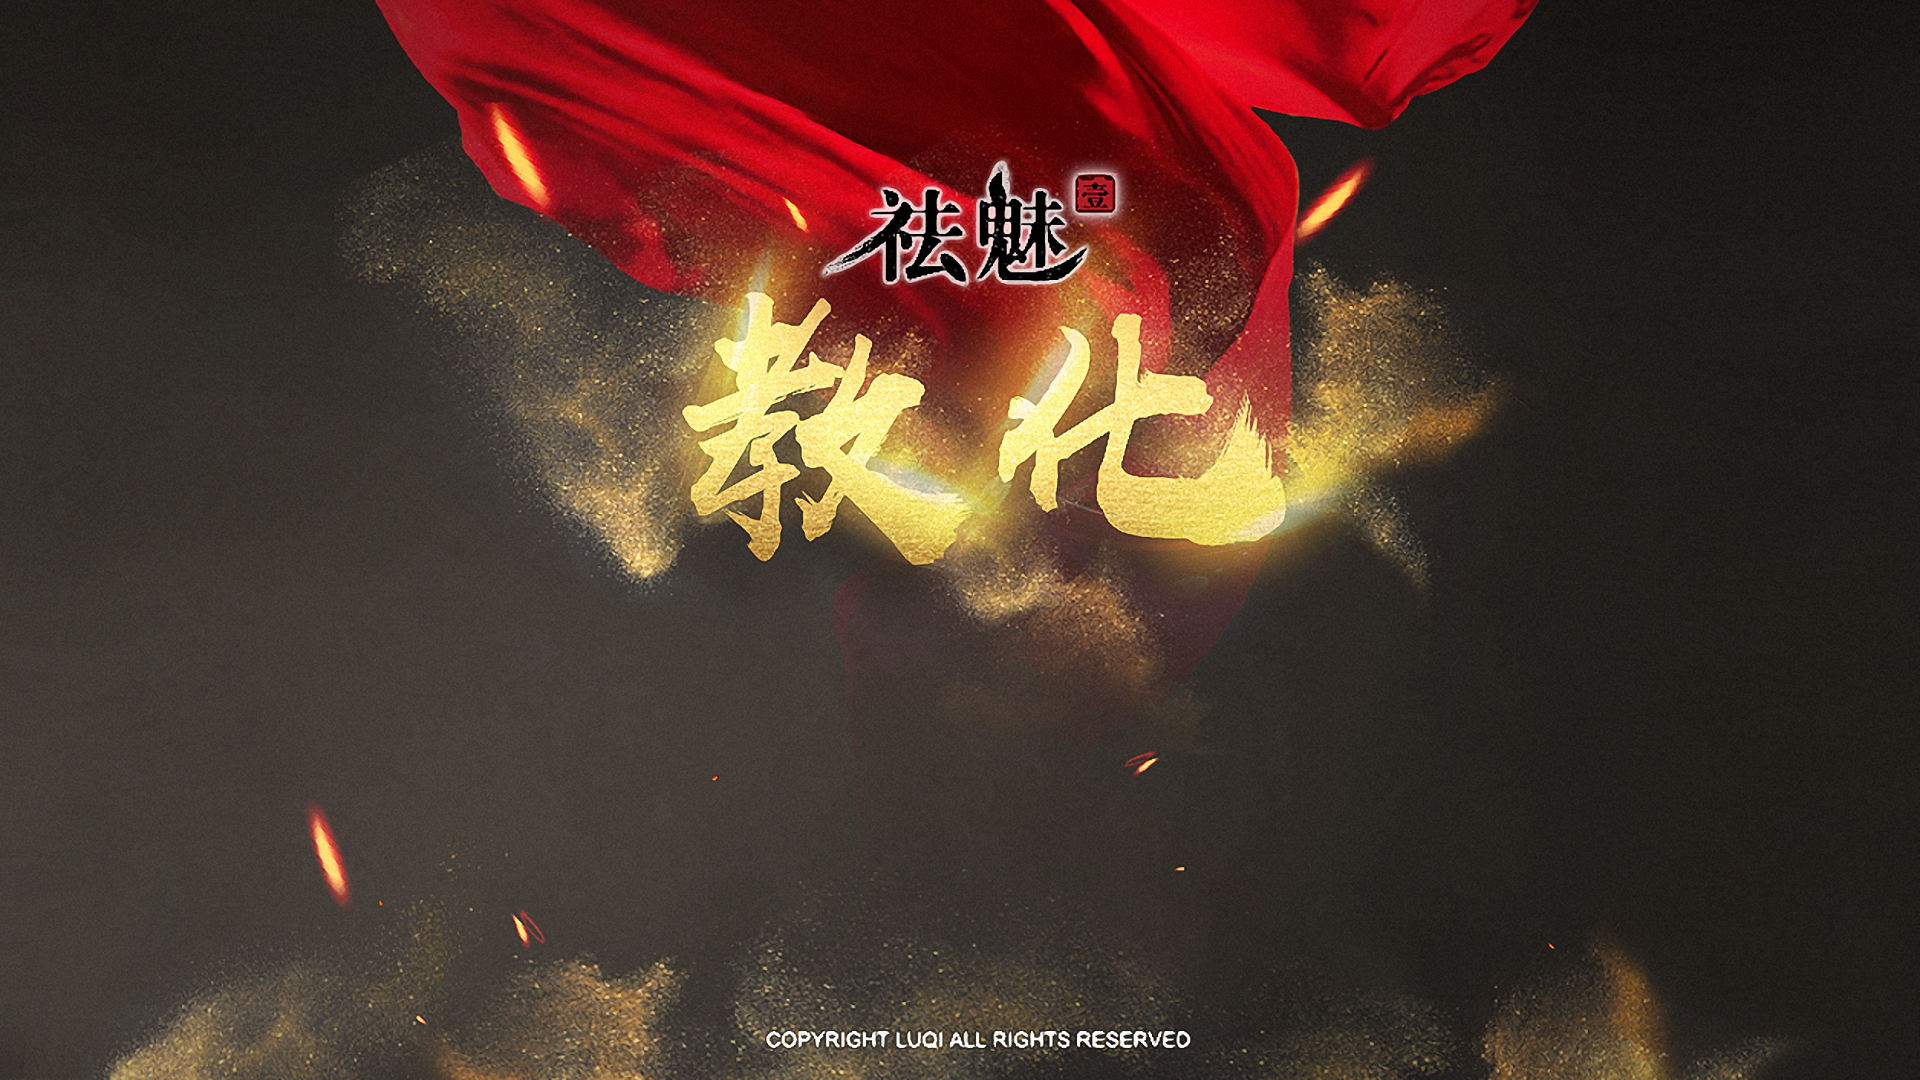 Banner of 解呪 1: 悟り 7.0.0